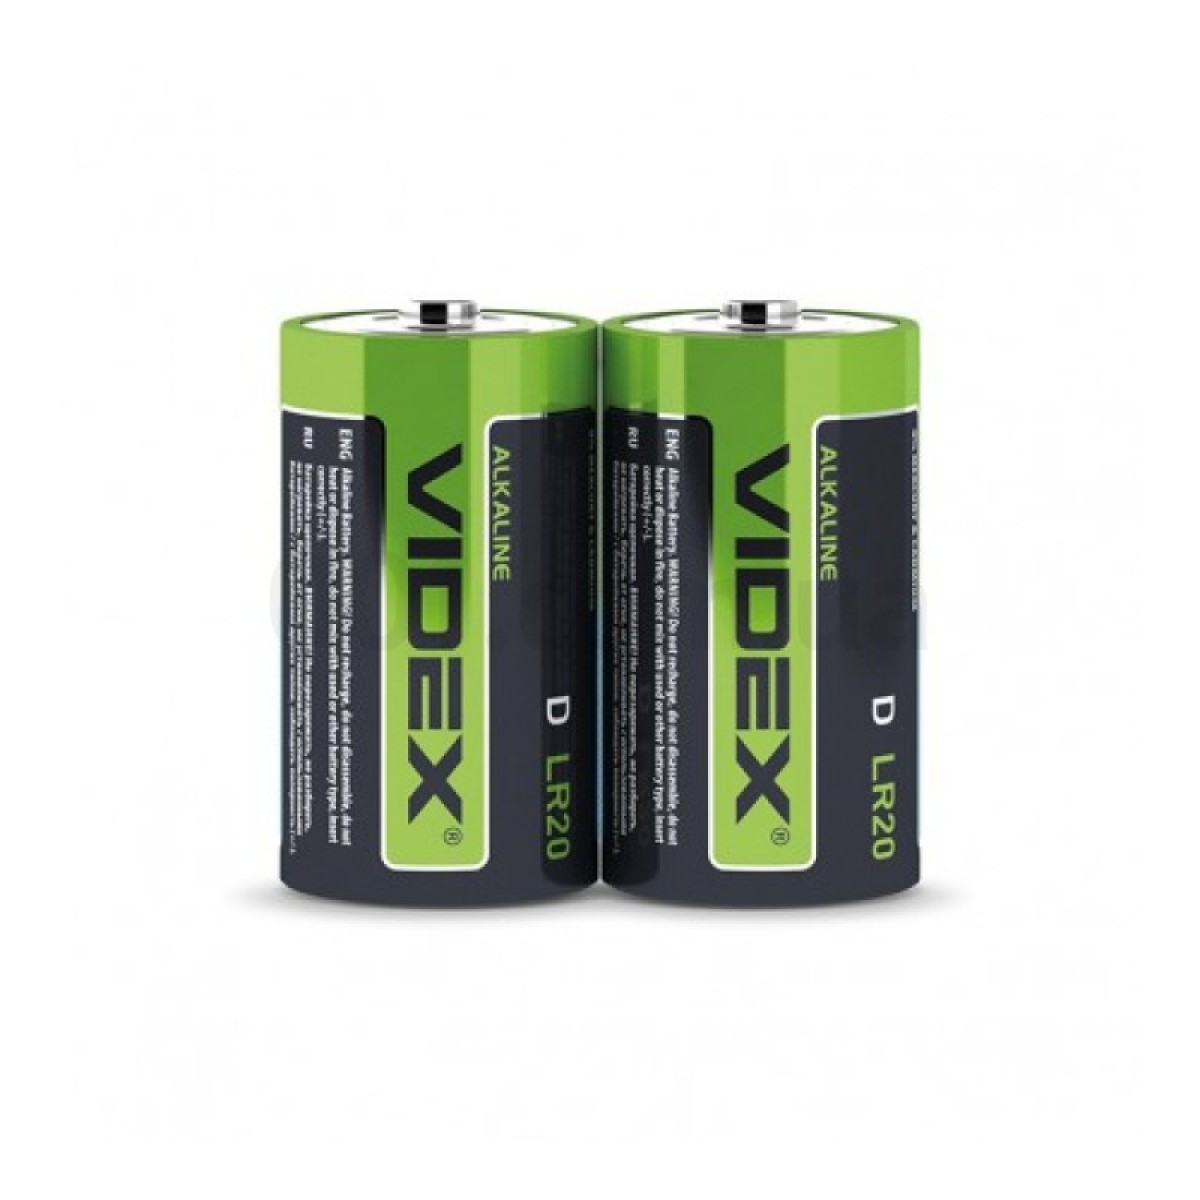 Батарейка щелочная LR20/D упаковка shrink 2 шт., VIDEX 256_256.jpg